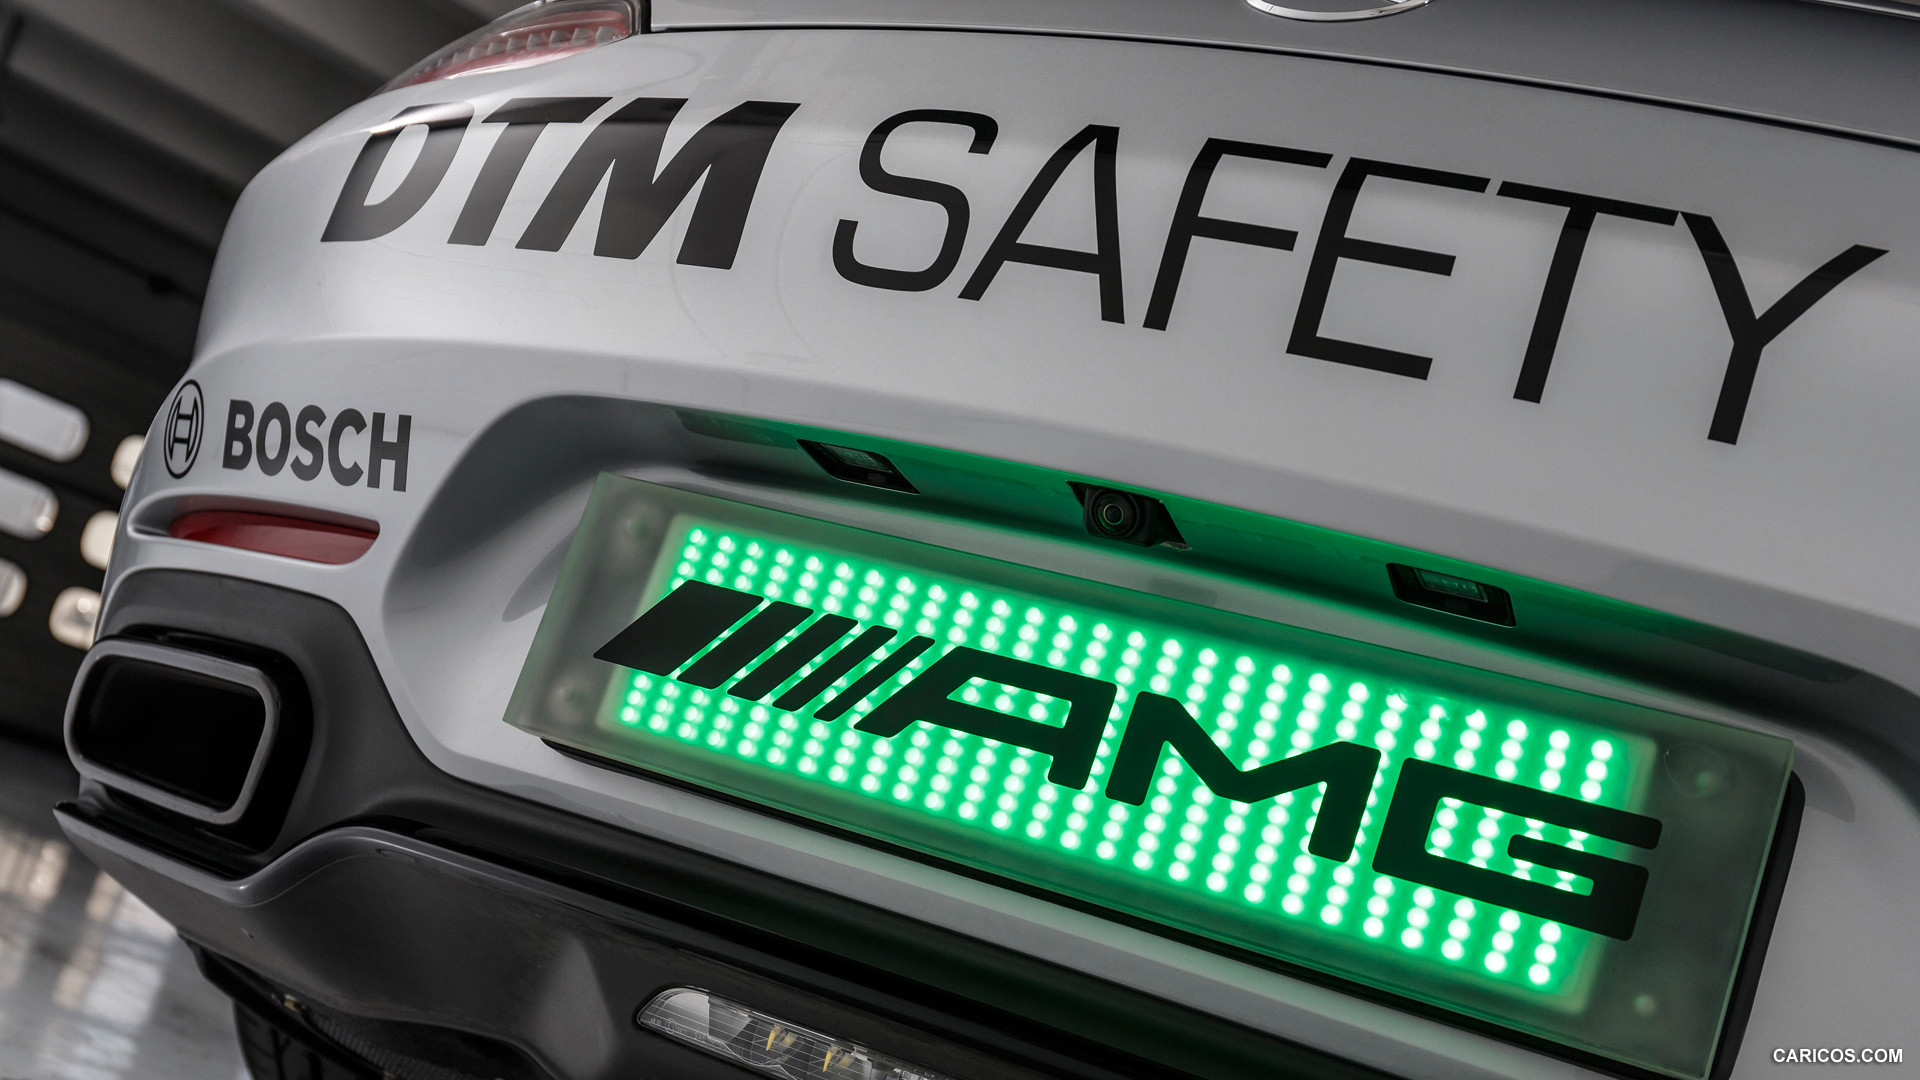 2015 Mercedes-AMG GT S DTM Safety Car  - Detail, #13 of 16